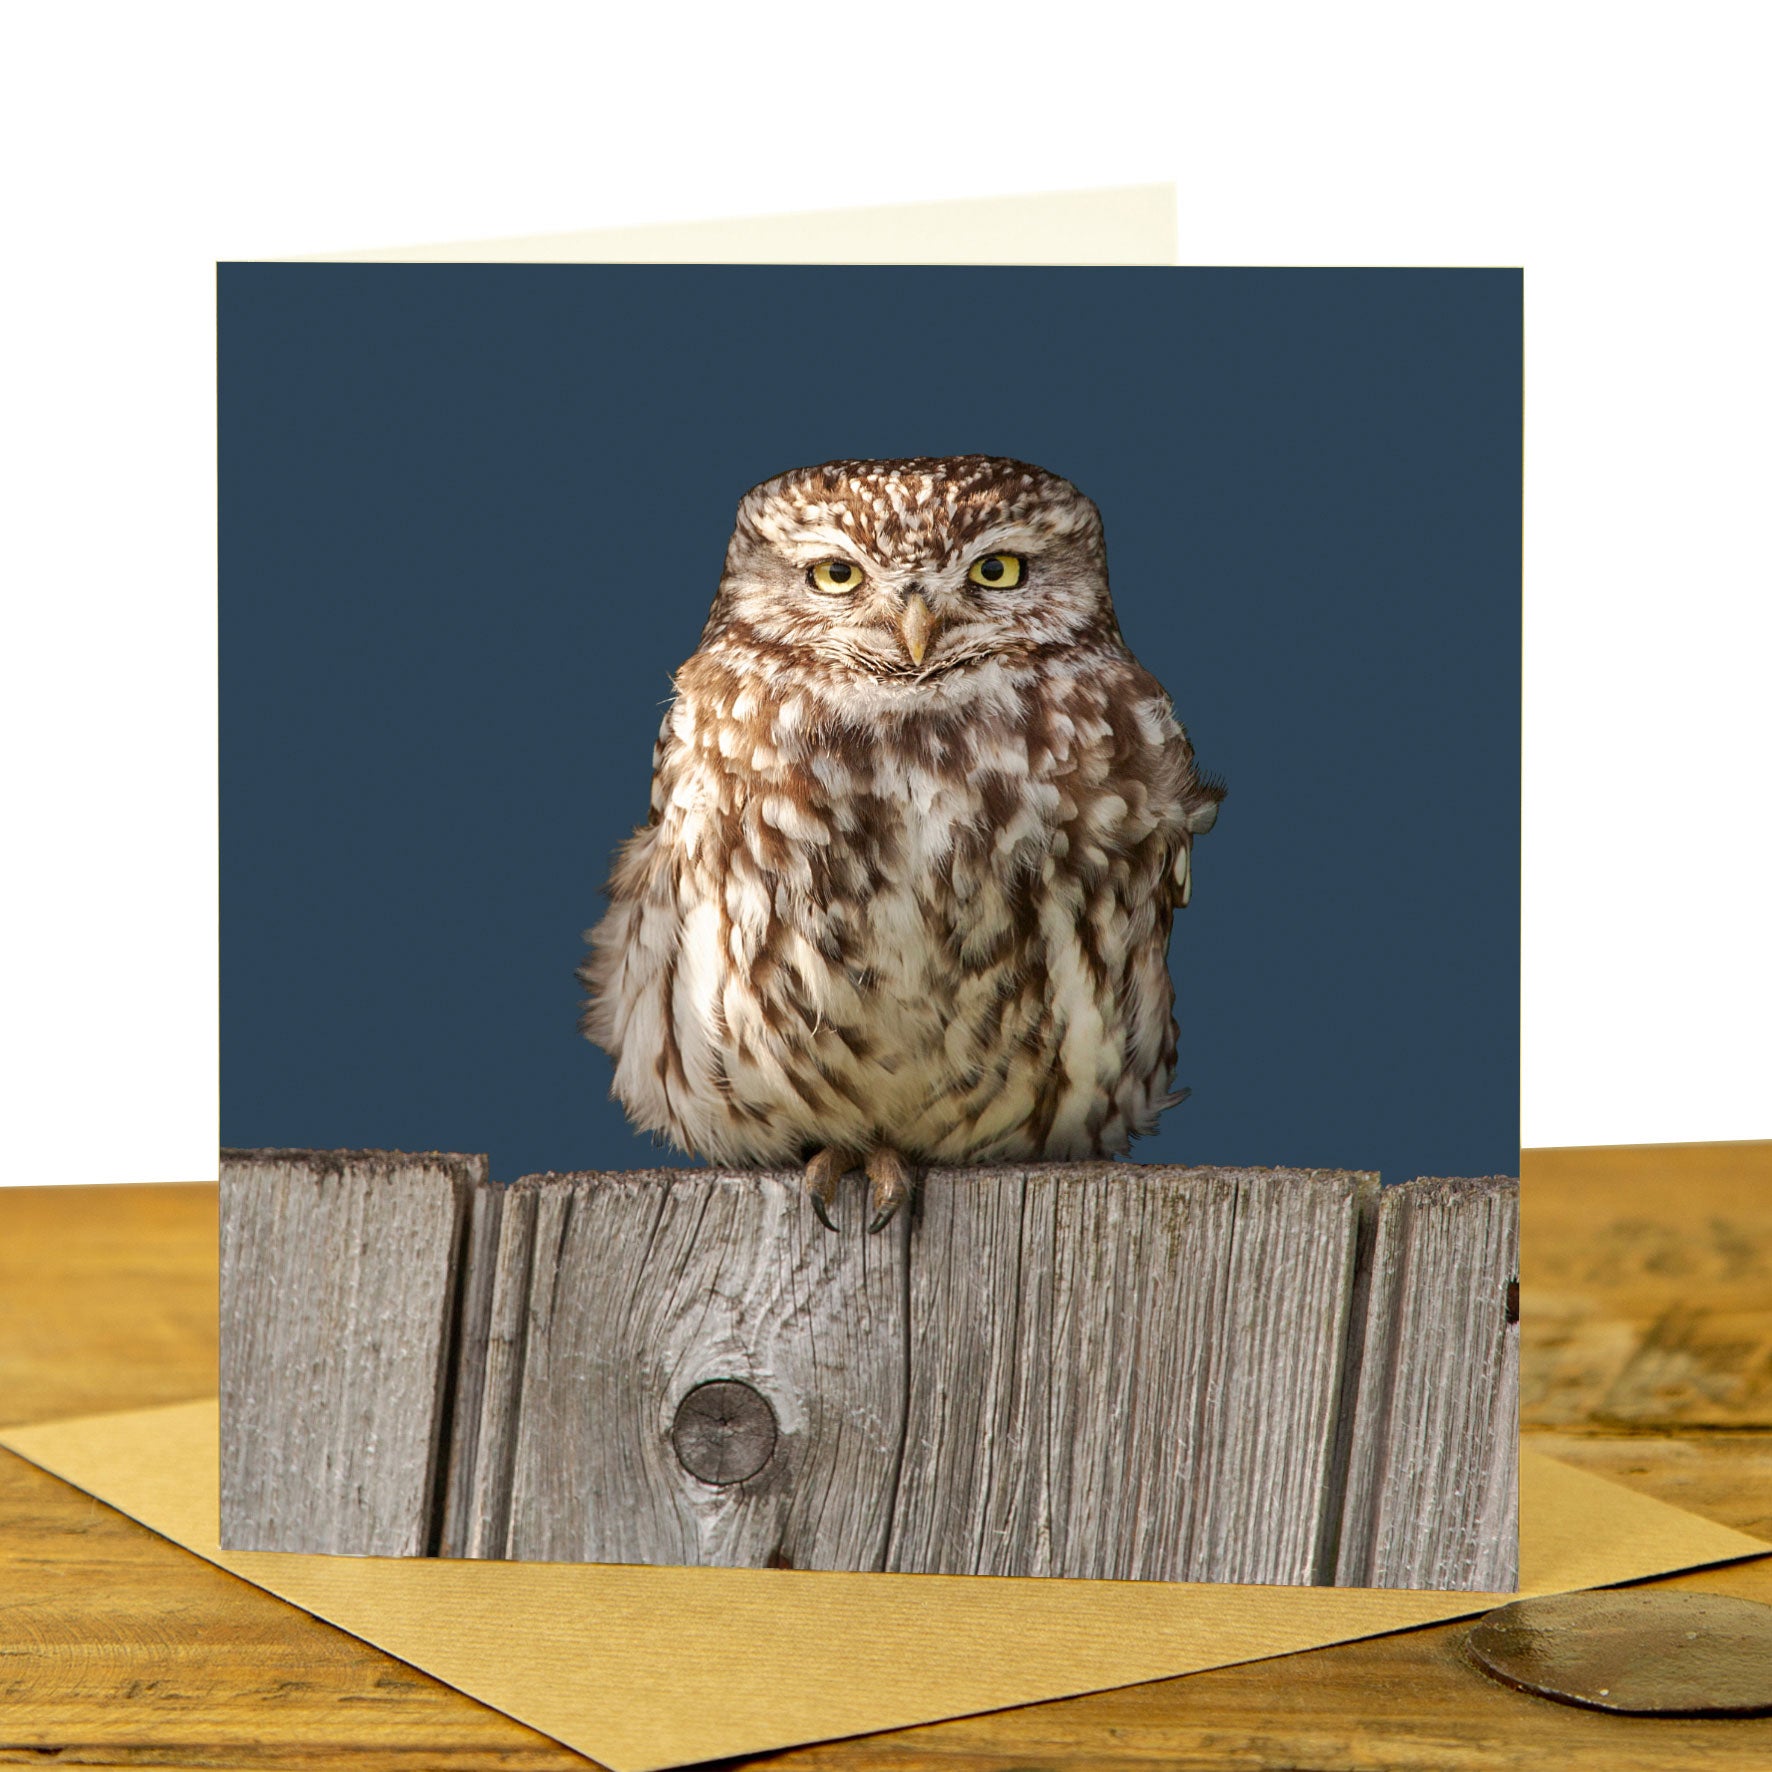 Owl Cards - Little Owl on Fence Card